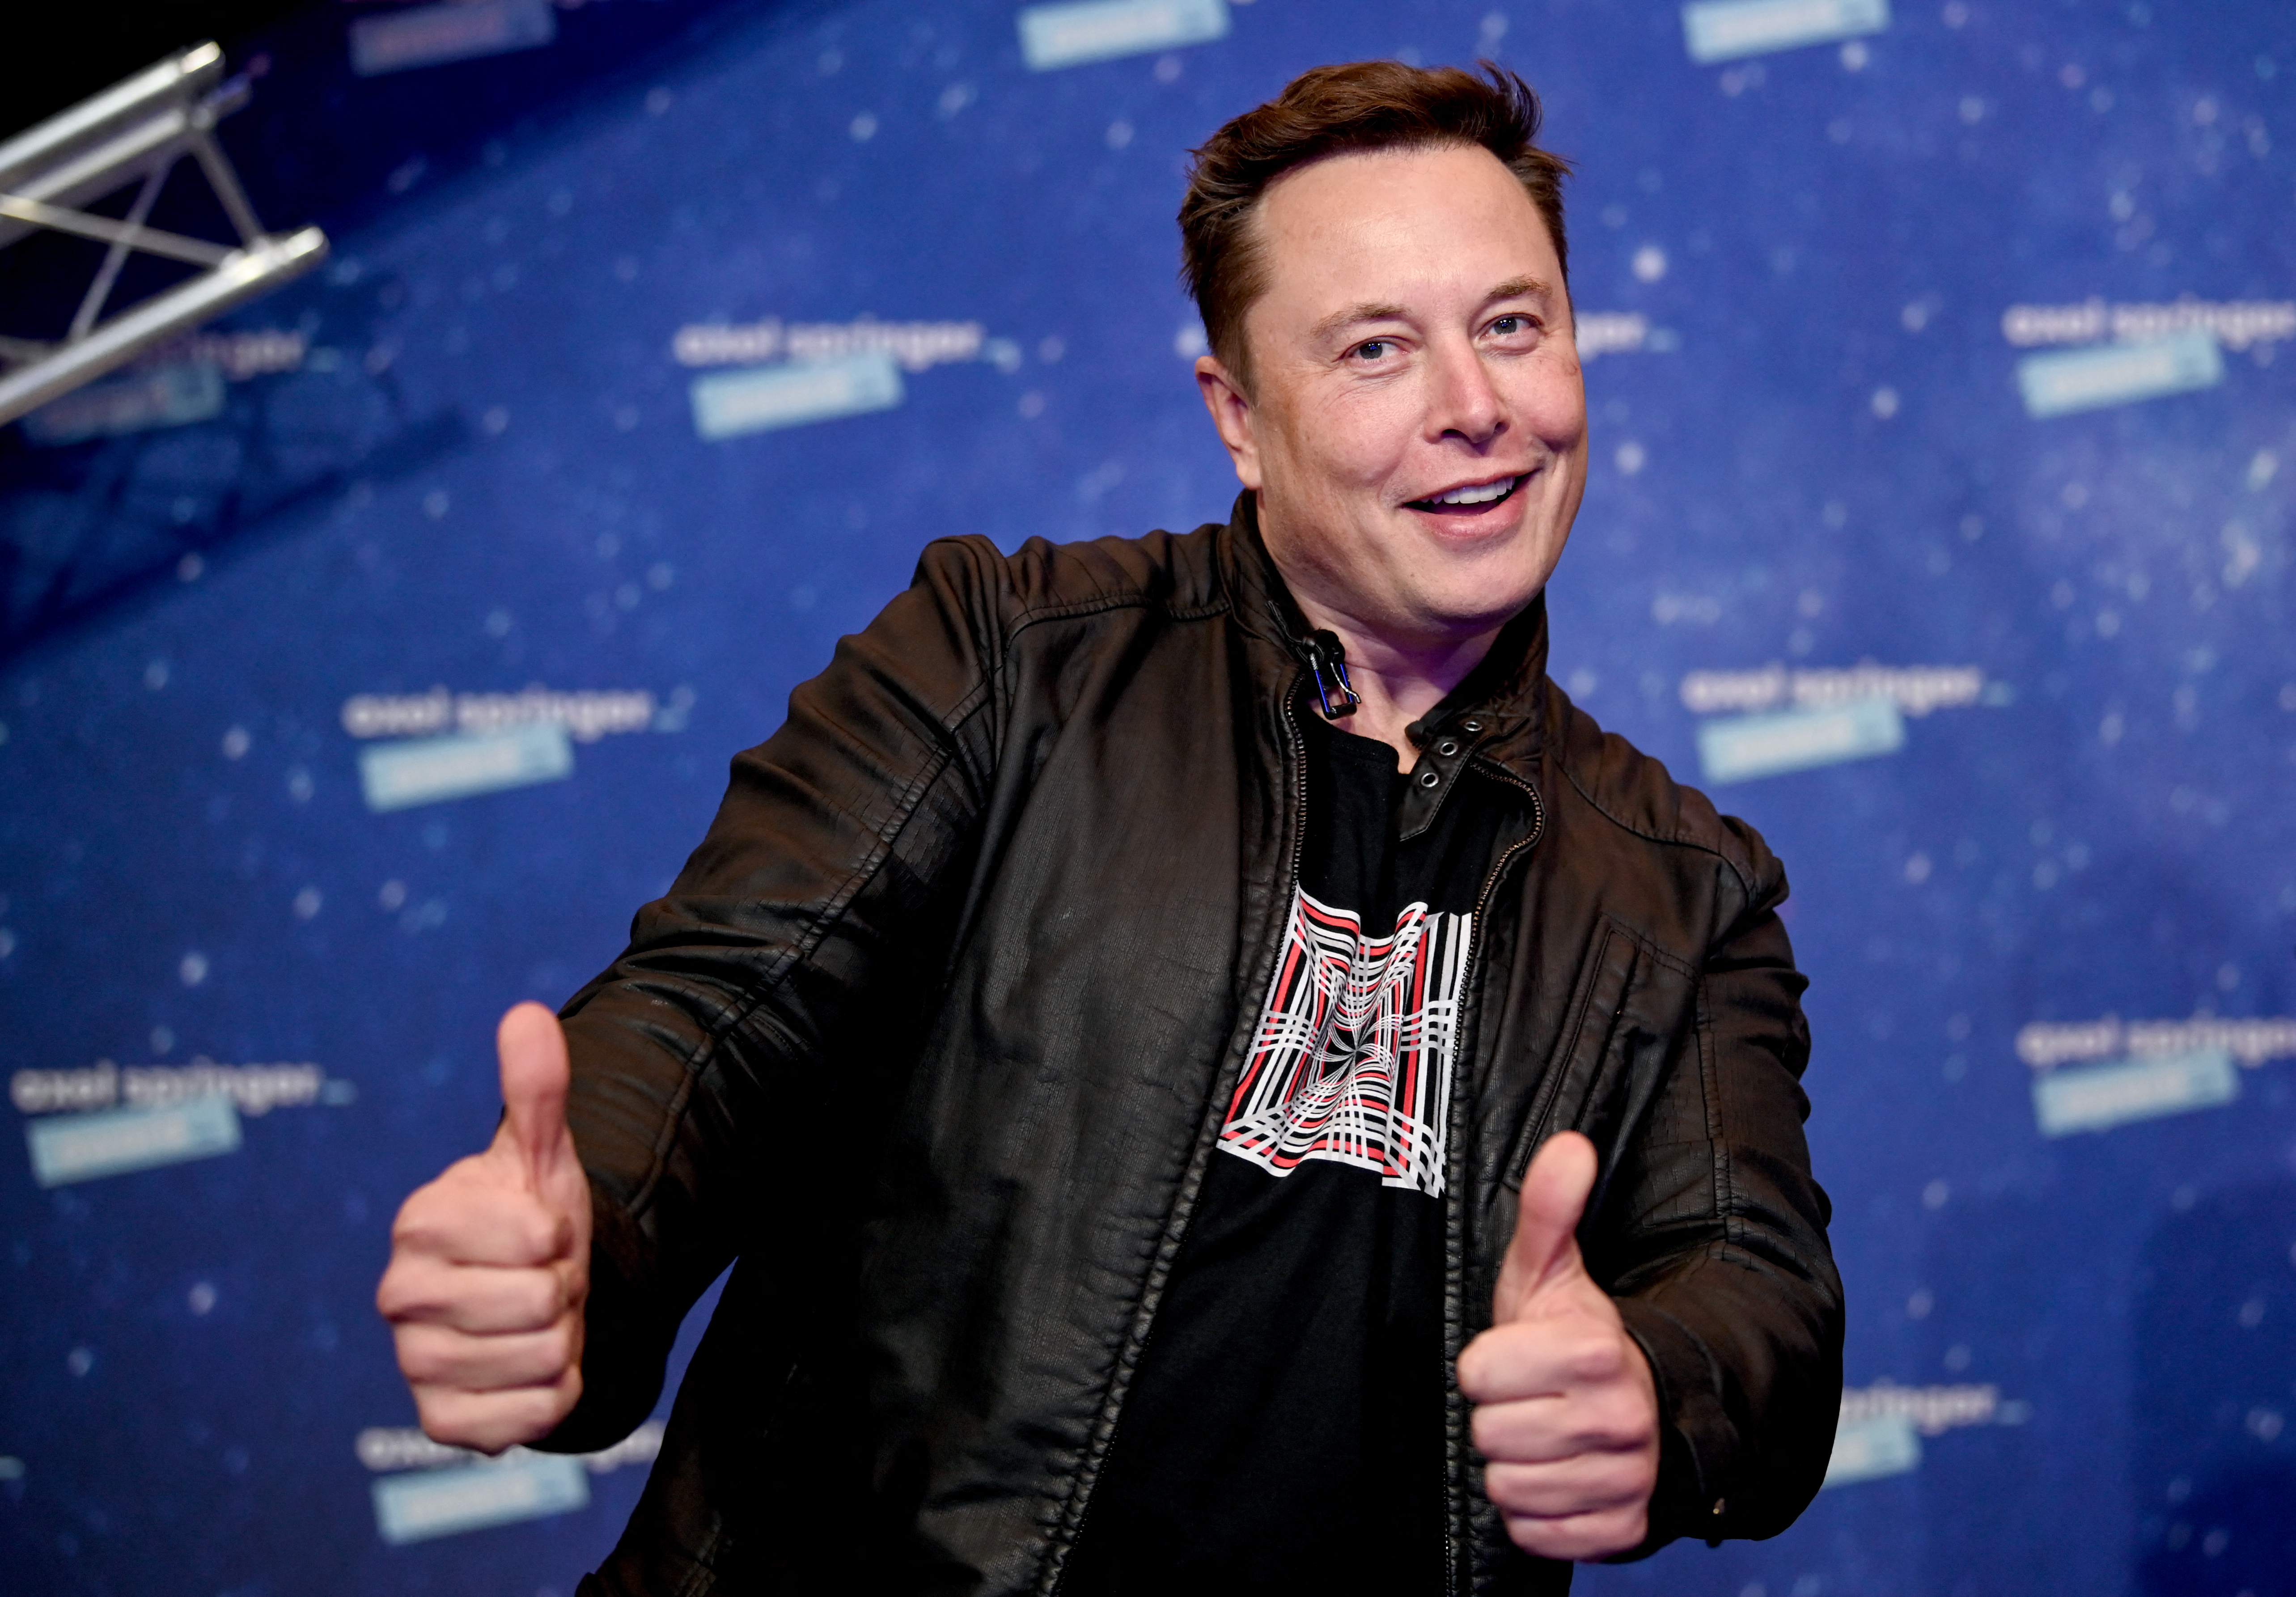 Két hónap mosolyszünet után Elon Musk újra a bitcoin pártjára állt